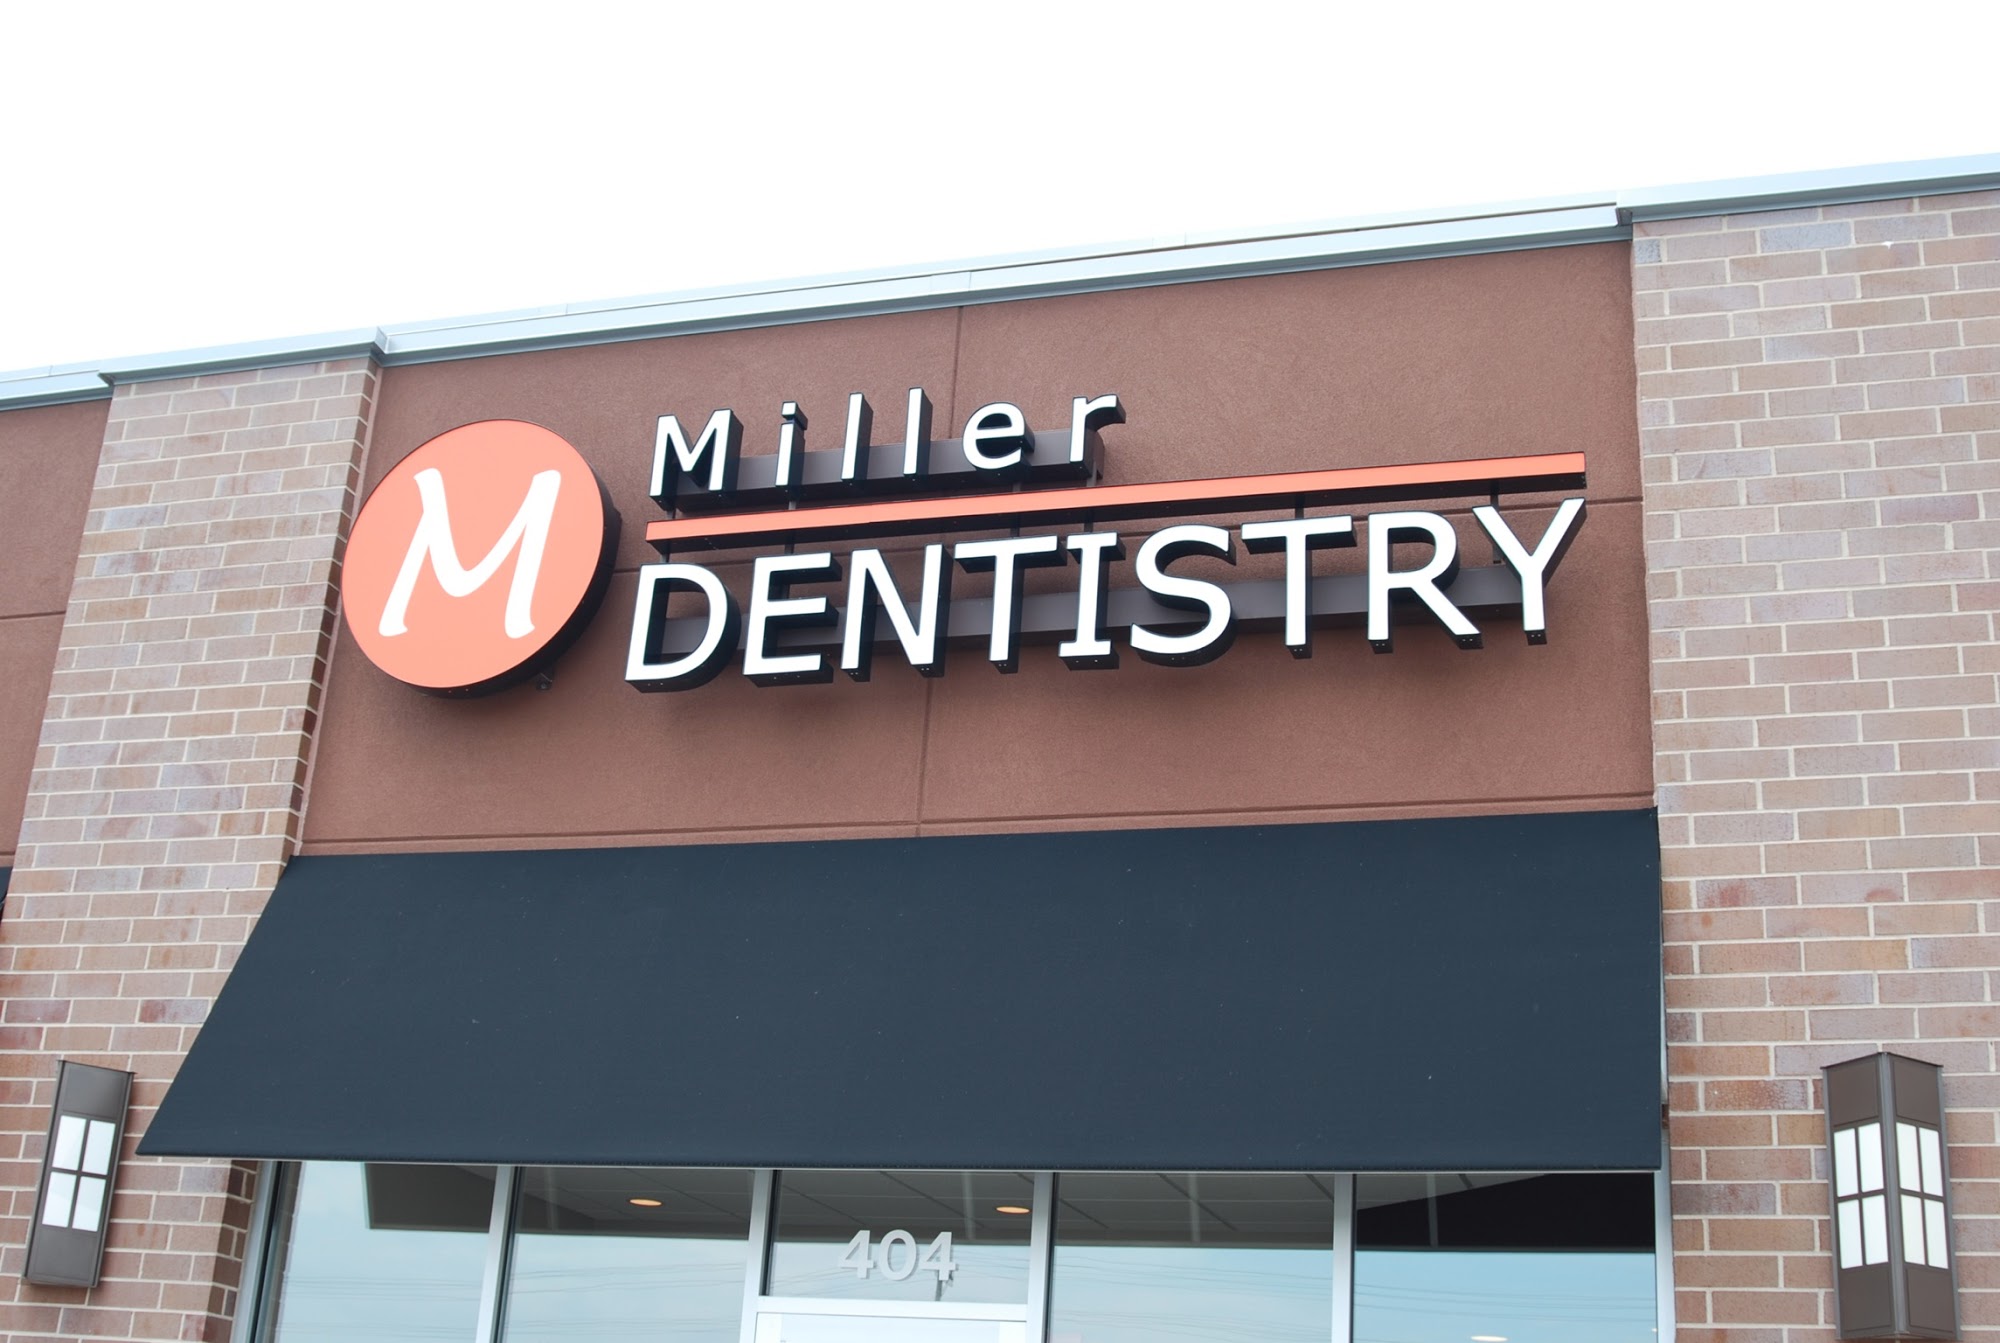 Miller Dentistry: Dr. Angela Miller, DDS